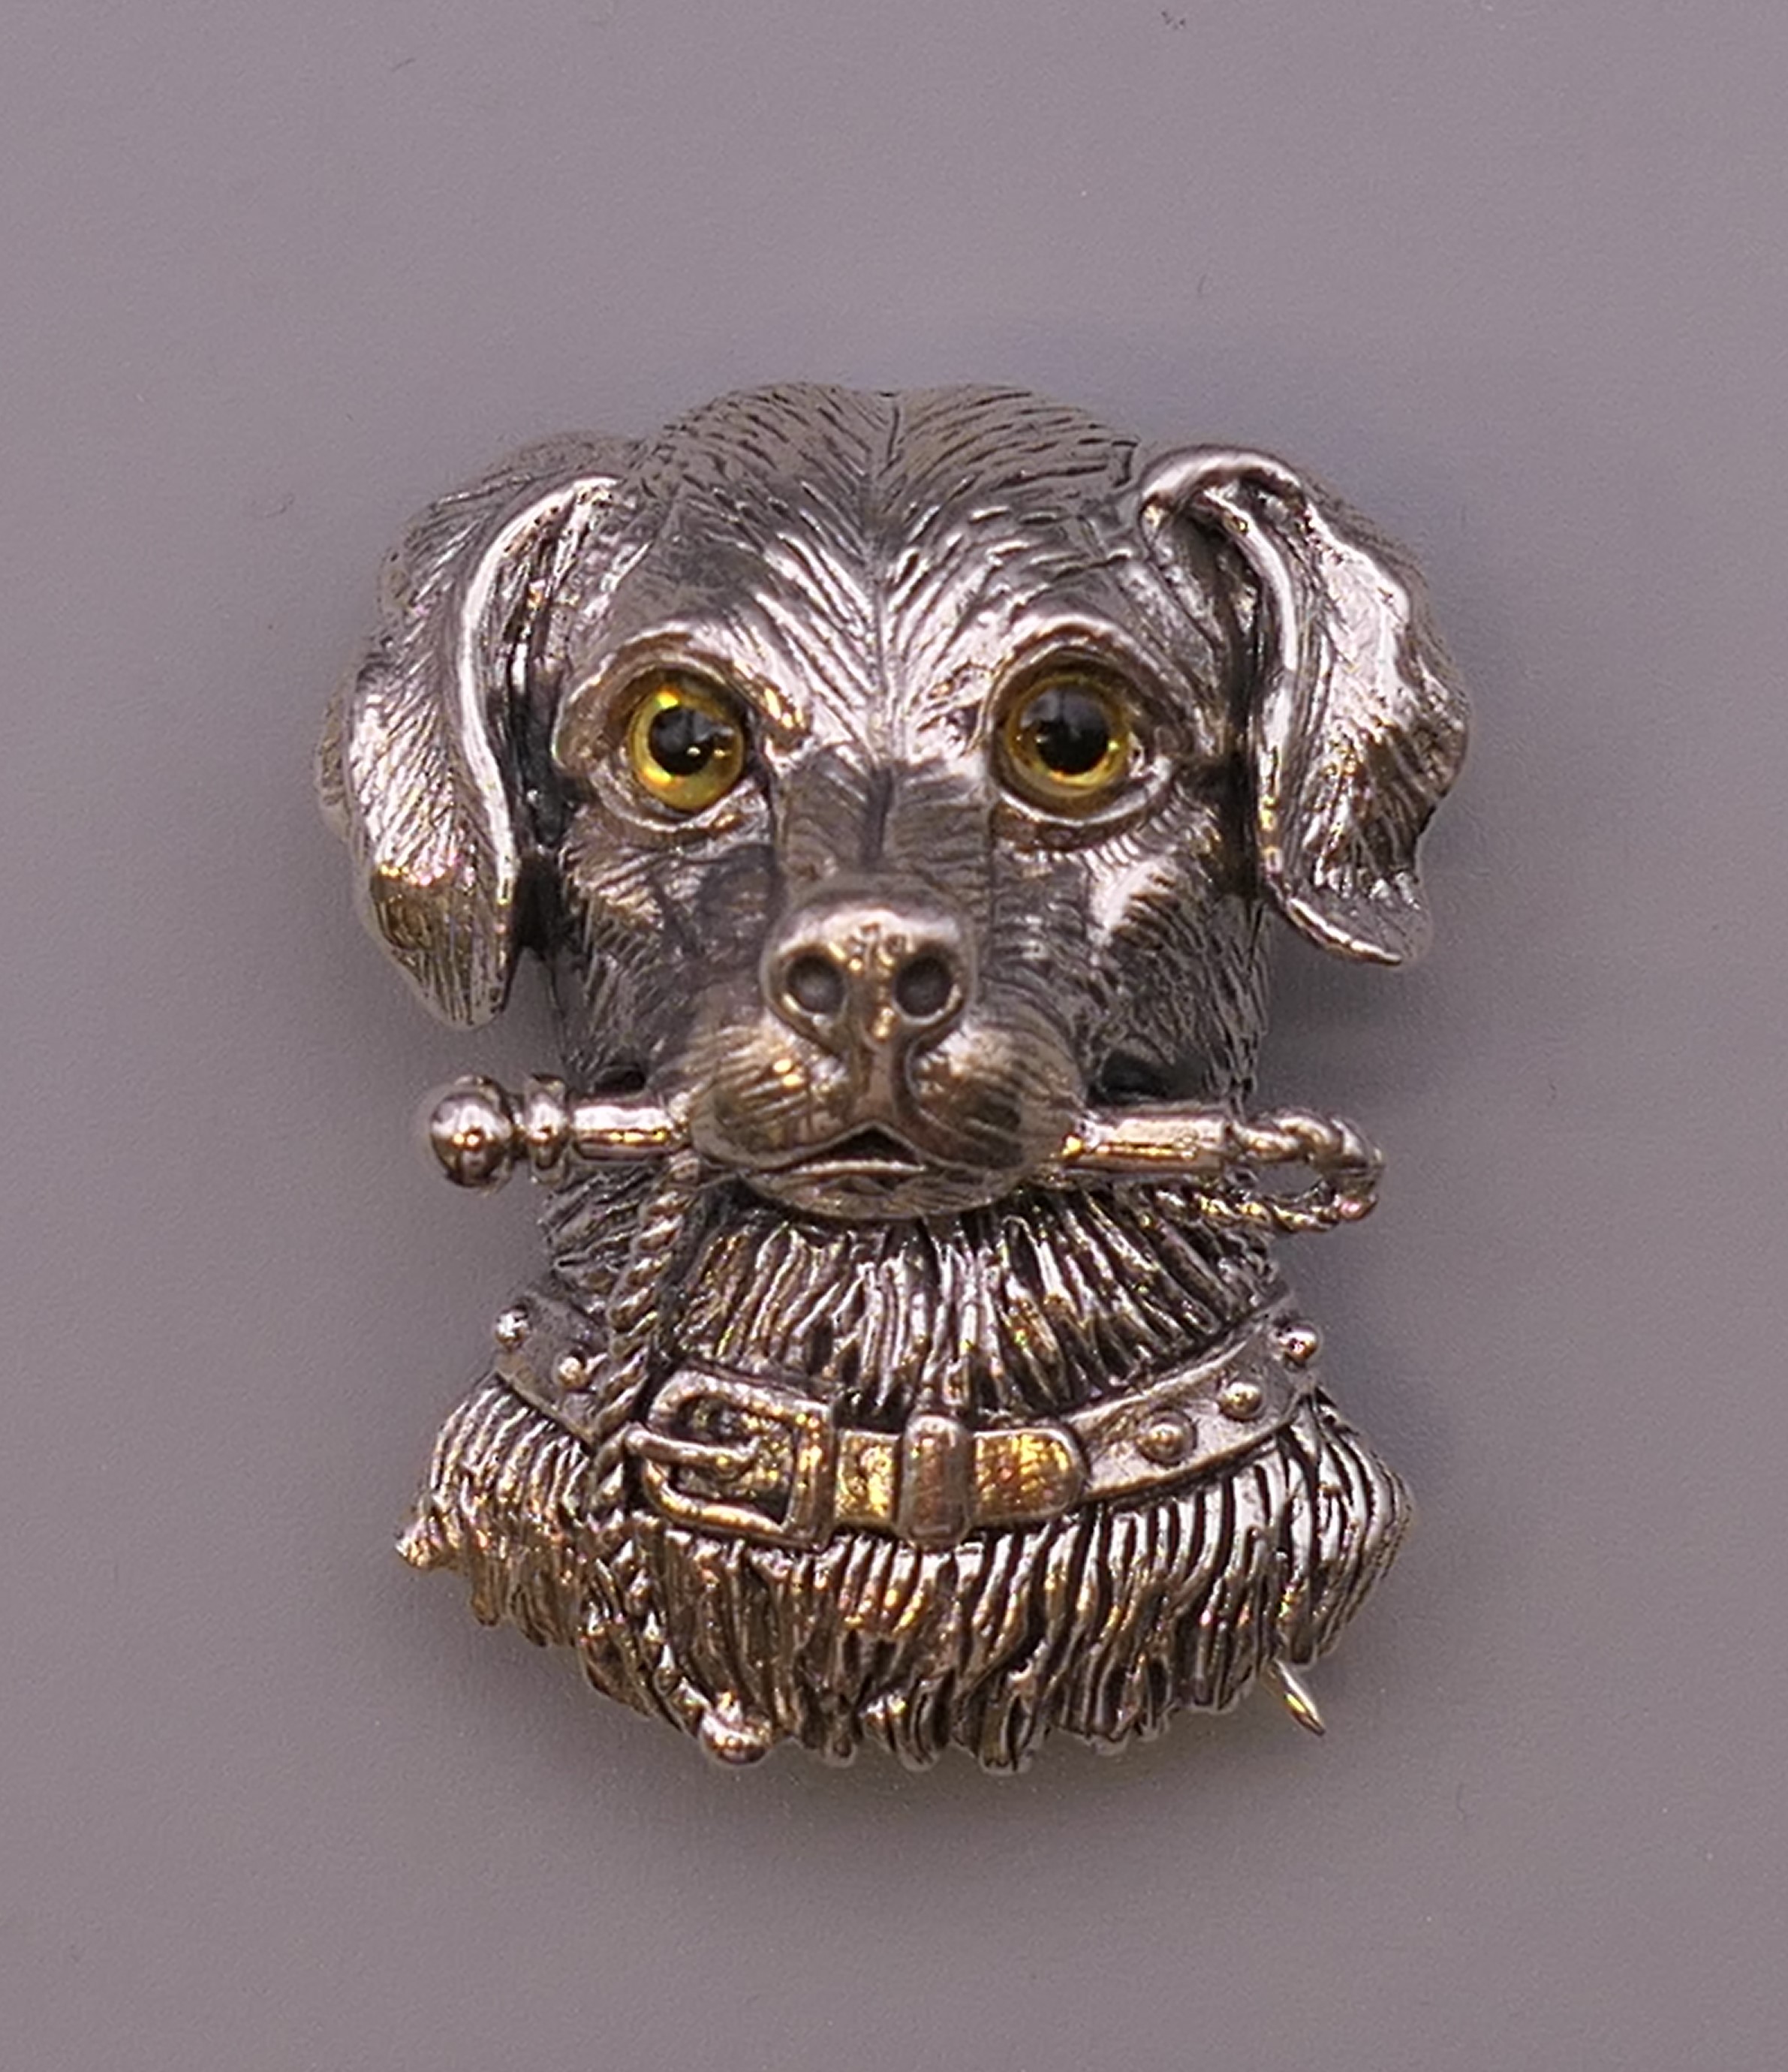 A silver dog form brooch. 3 cm high.